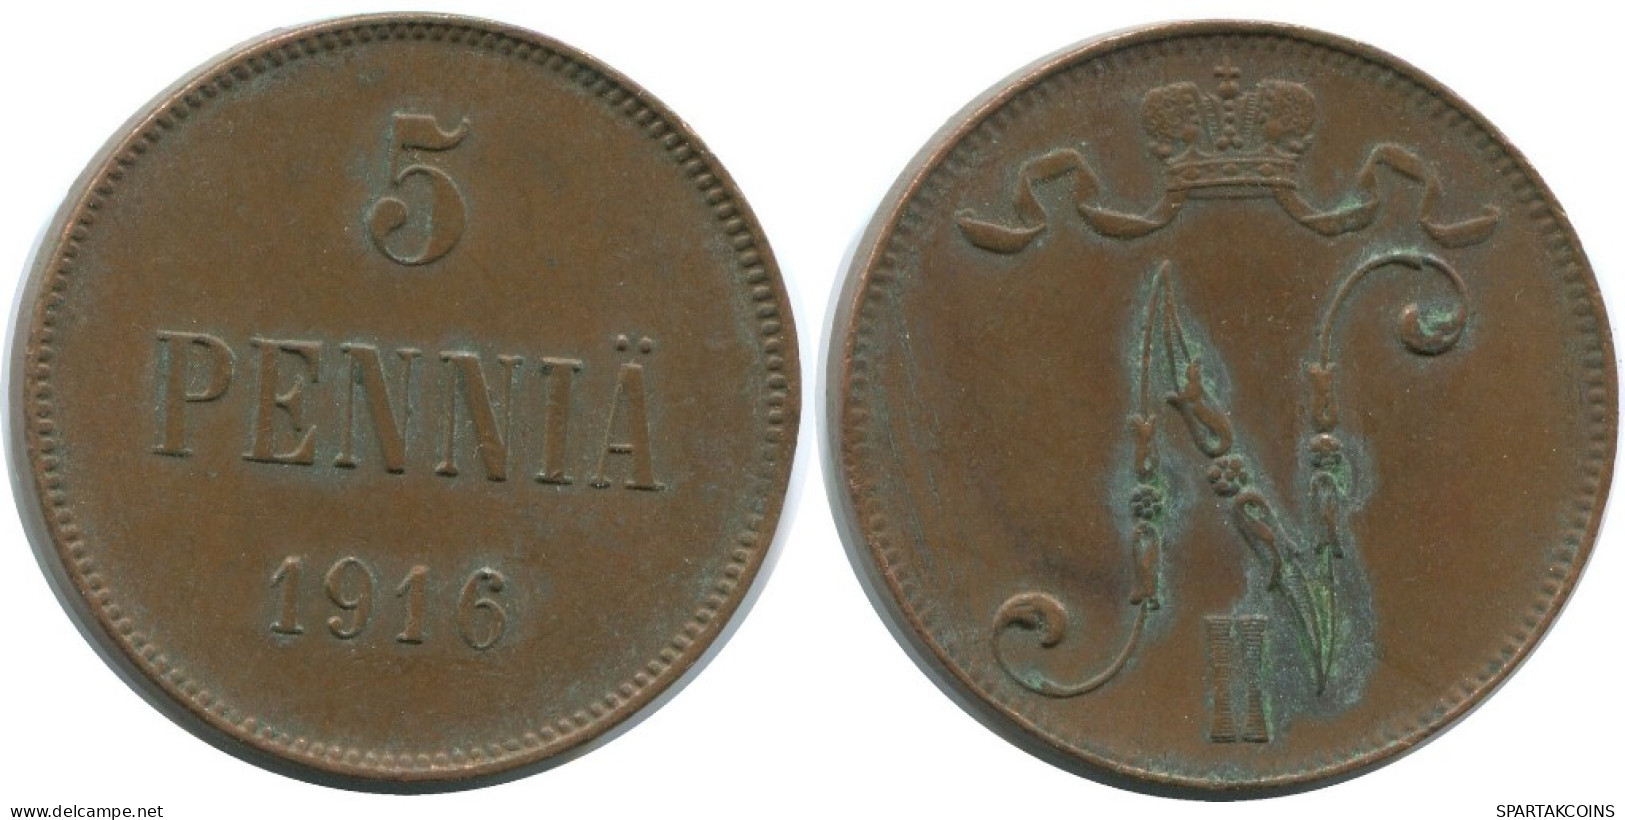 5 PENNIA 1916 FINLAND Coin RUSSIA EMPIRE #AB203.5.U.A - Finlandia